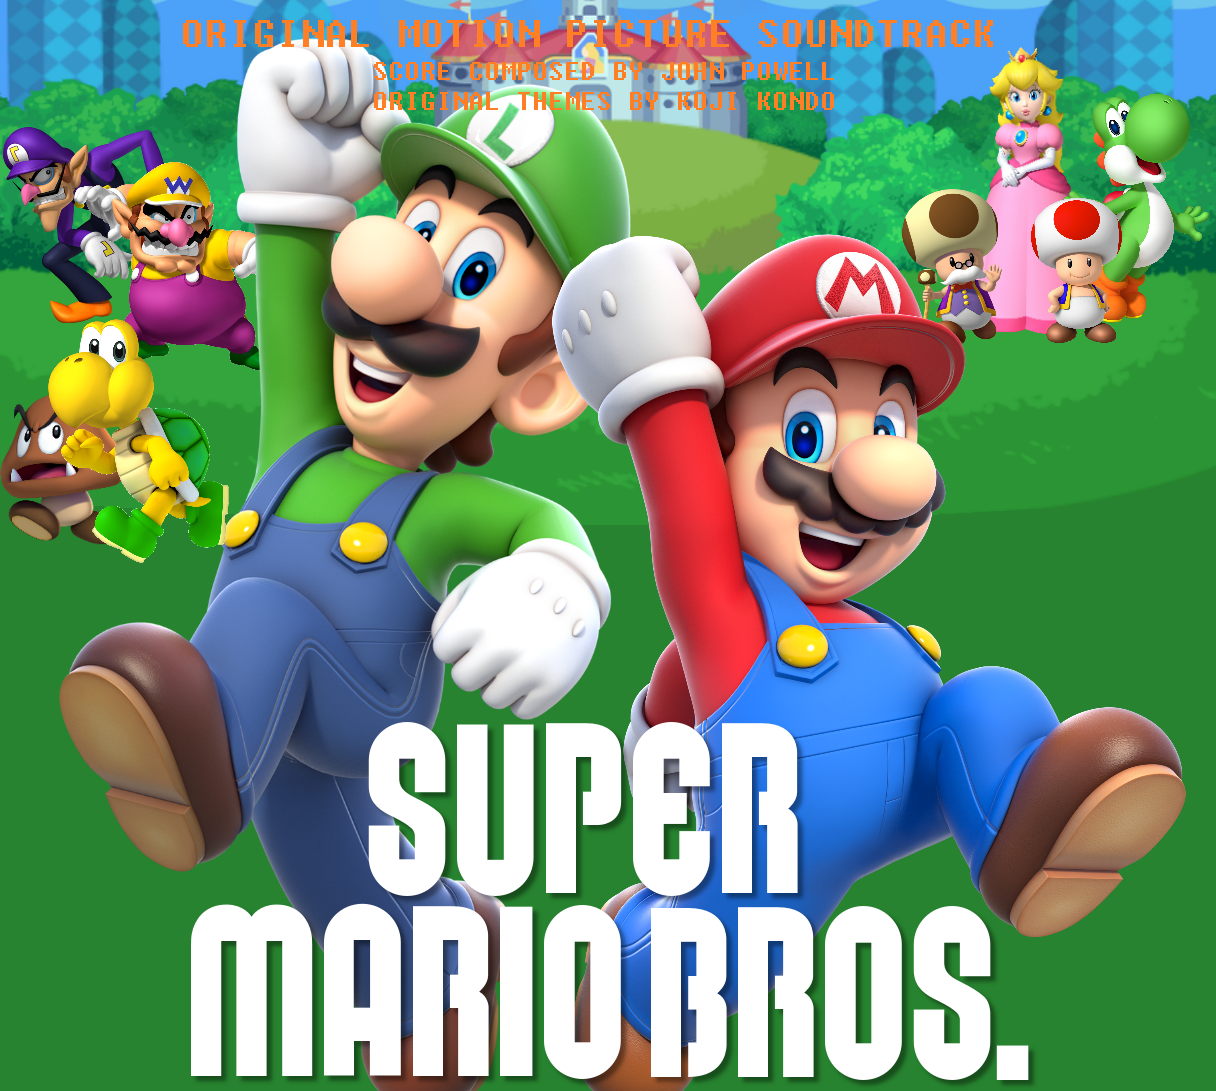 Super Mario Bros Movie 2019 Release Date